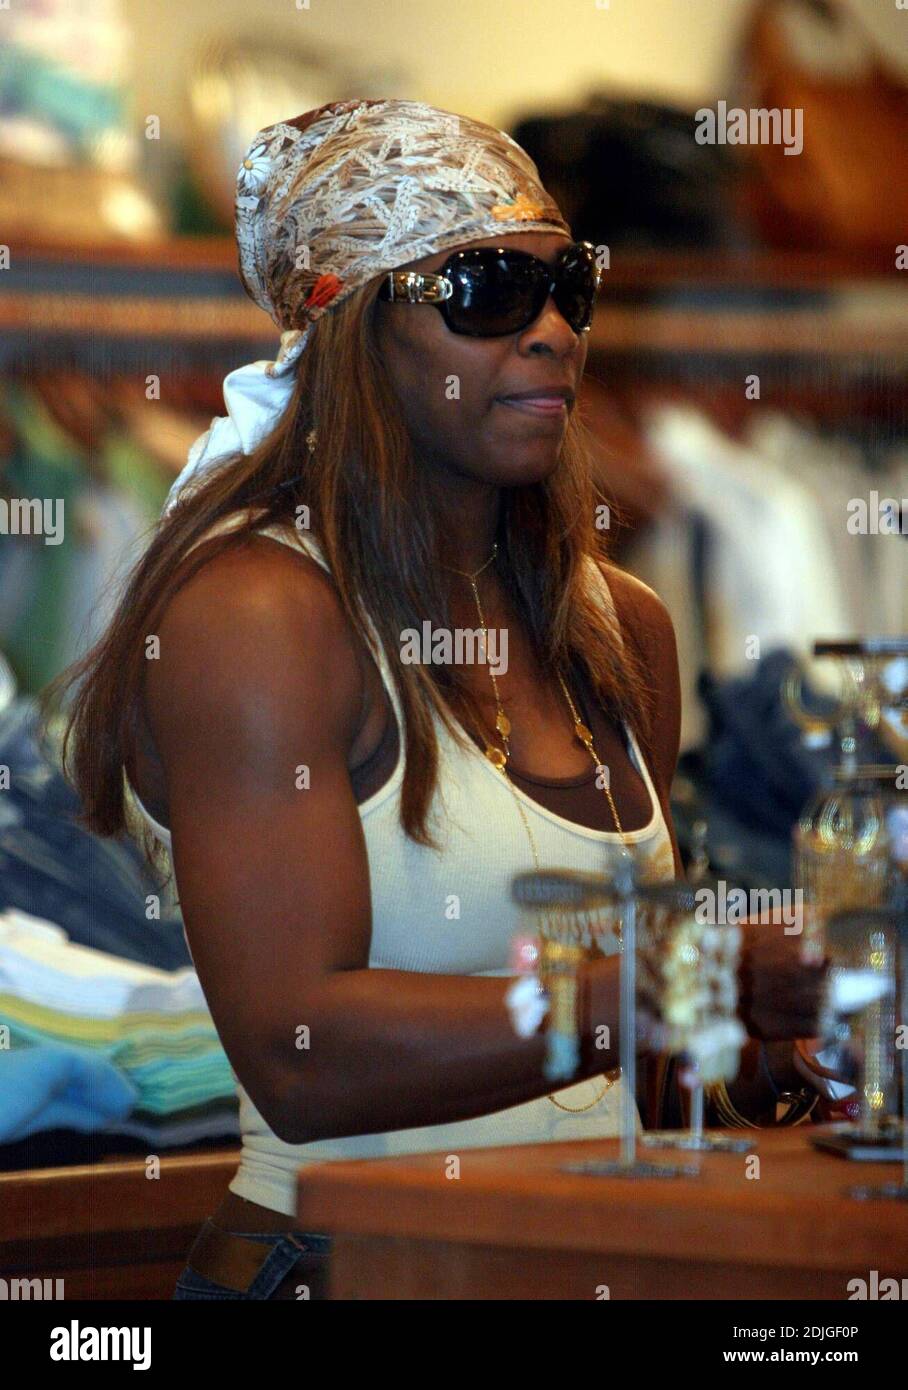 Serena Williams passe trois heures à faire du shopping à Lisa Kline et Kitson à Los Angeles, Californie. Serena a porté une paire de jeans de cavalier bas qui plus que montré ses courbes. Le joueur de tennis s'est également arrêté pour acheter du chocolat aux enfants de la rue. 1/26/06 Banque D'Images